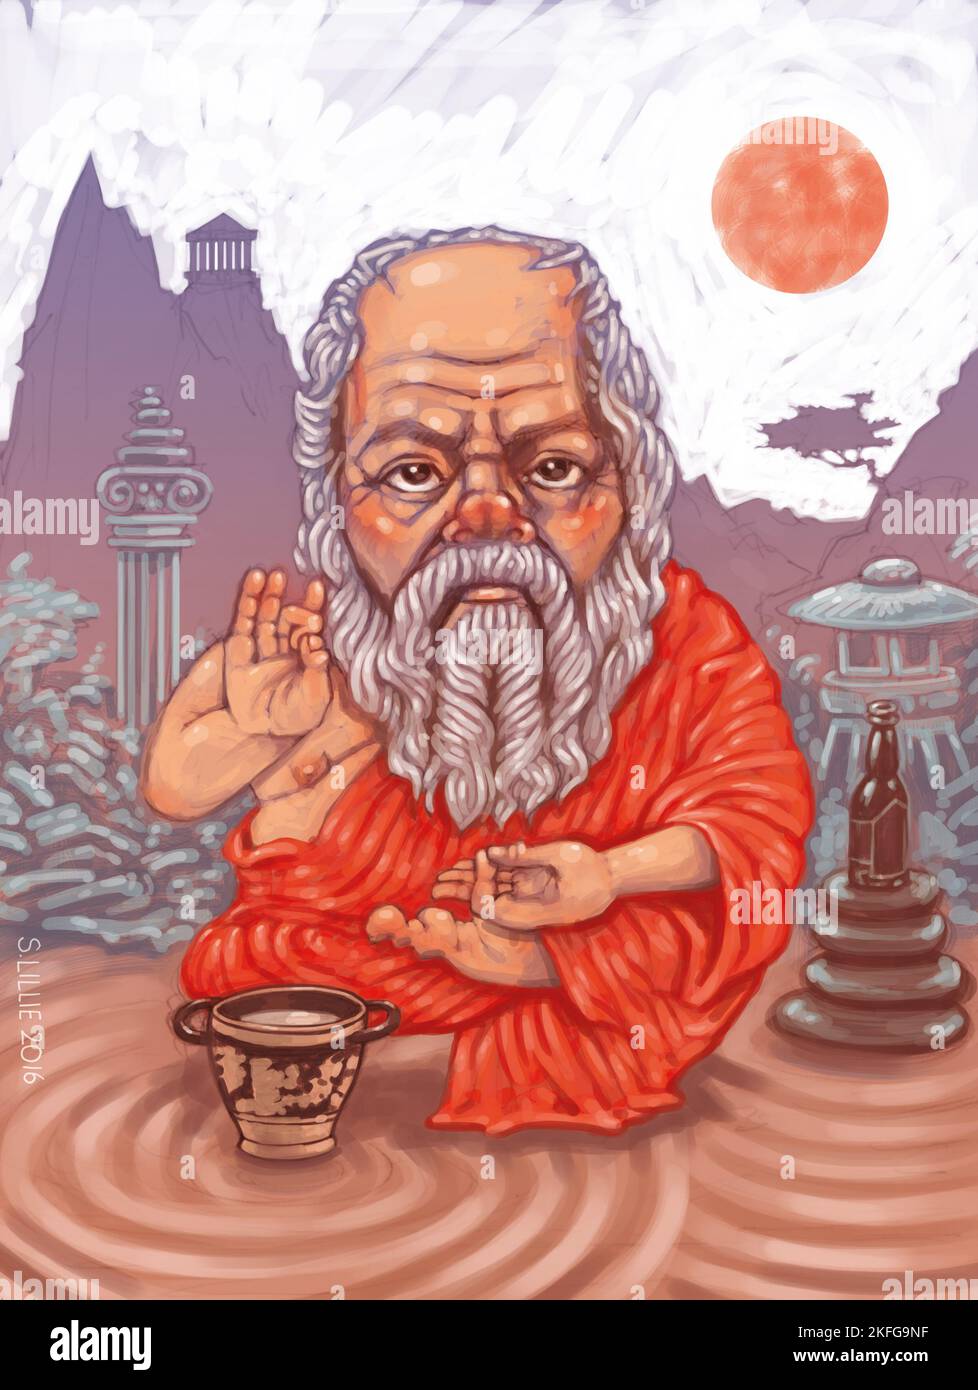 Die Konzeptkunst des griechischen Philosophen Sokrates saß im Zen-Garten und illustrierte die gemeinsamen Prinzipien zwischen der sokratischen Philosophie und den Zen-buddhistischen Prinzipien. Stockfoto